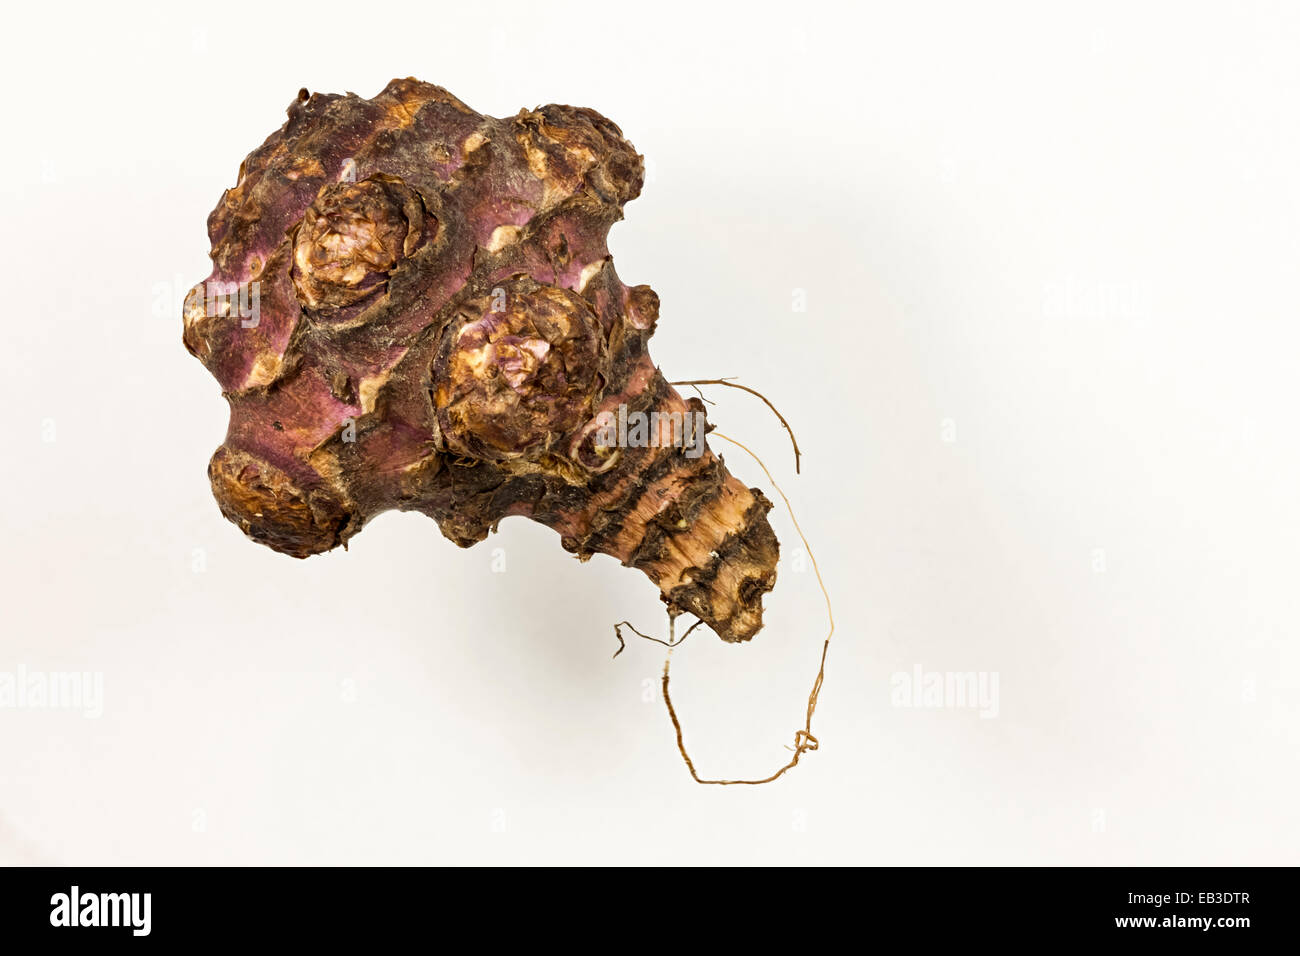 Le topinambour (Helianthus tuberosus), une espèce de tournesol originaire d'Amérique latine : légume-racine tubercule est utilisé en cuisine. Banque D'Images